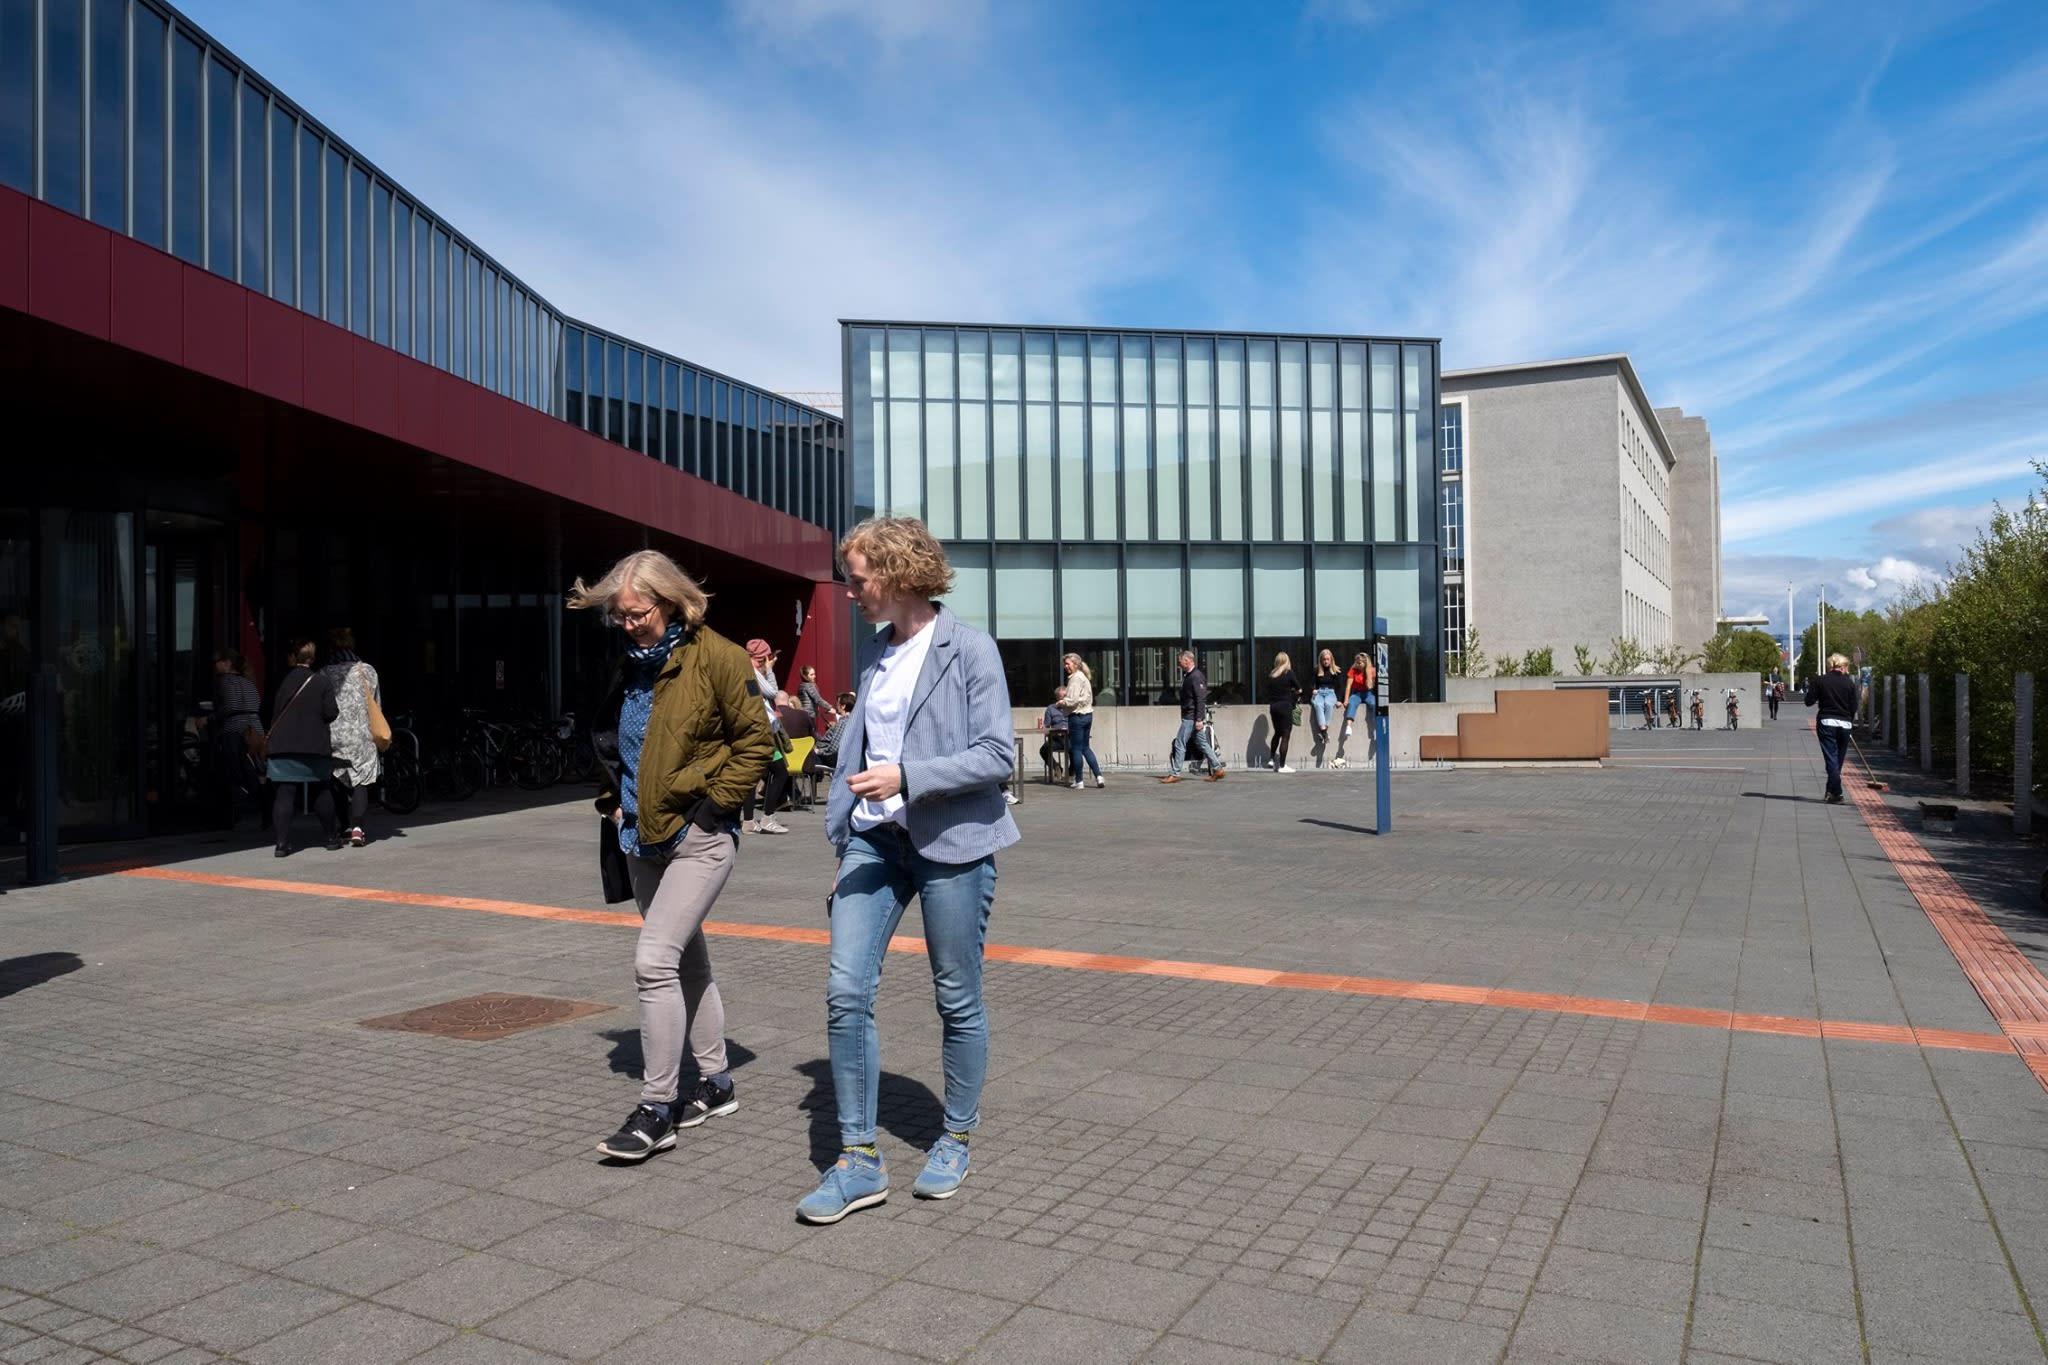 Исландский университет